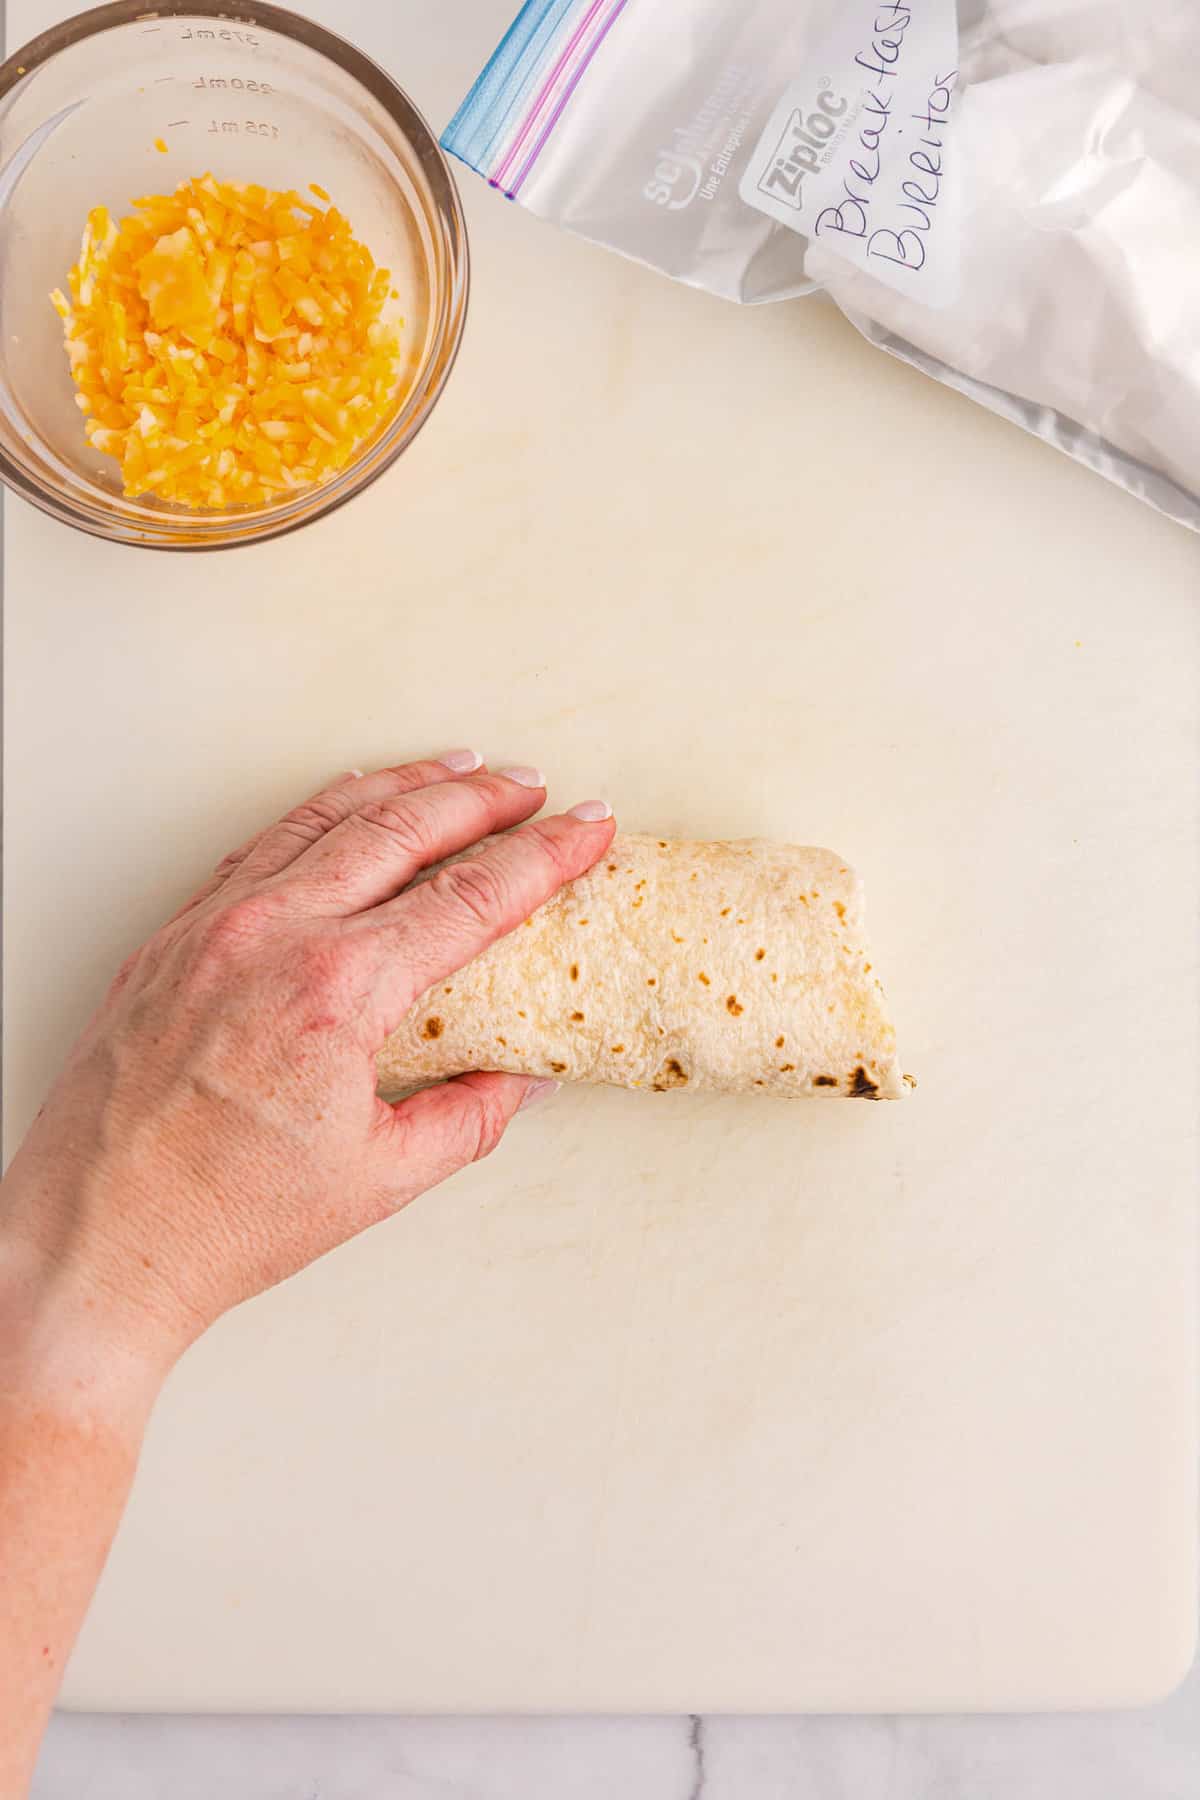 Hand holding breakfast burrito